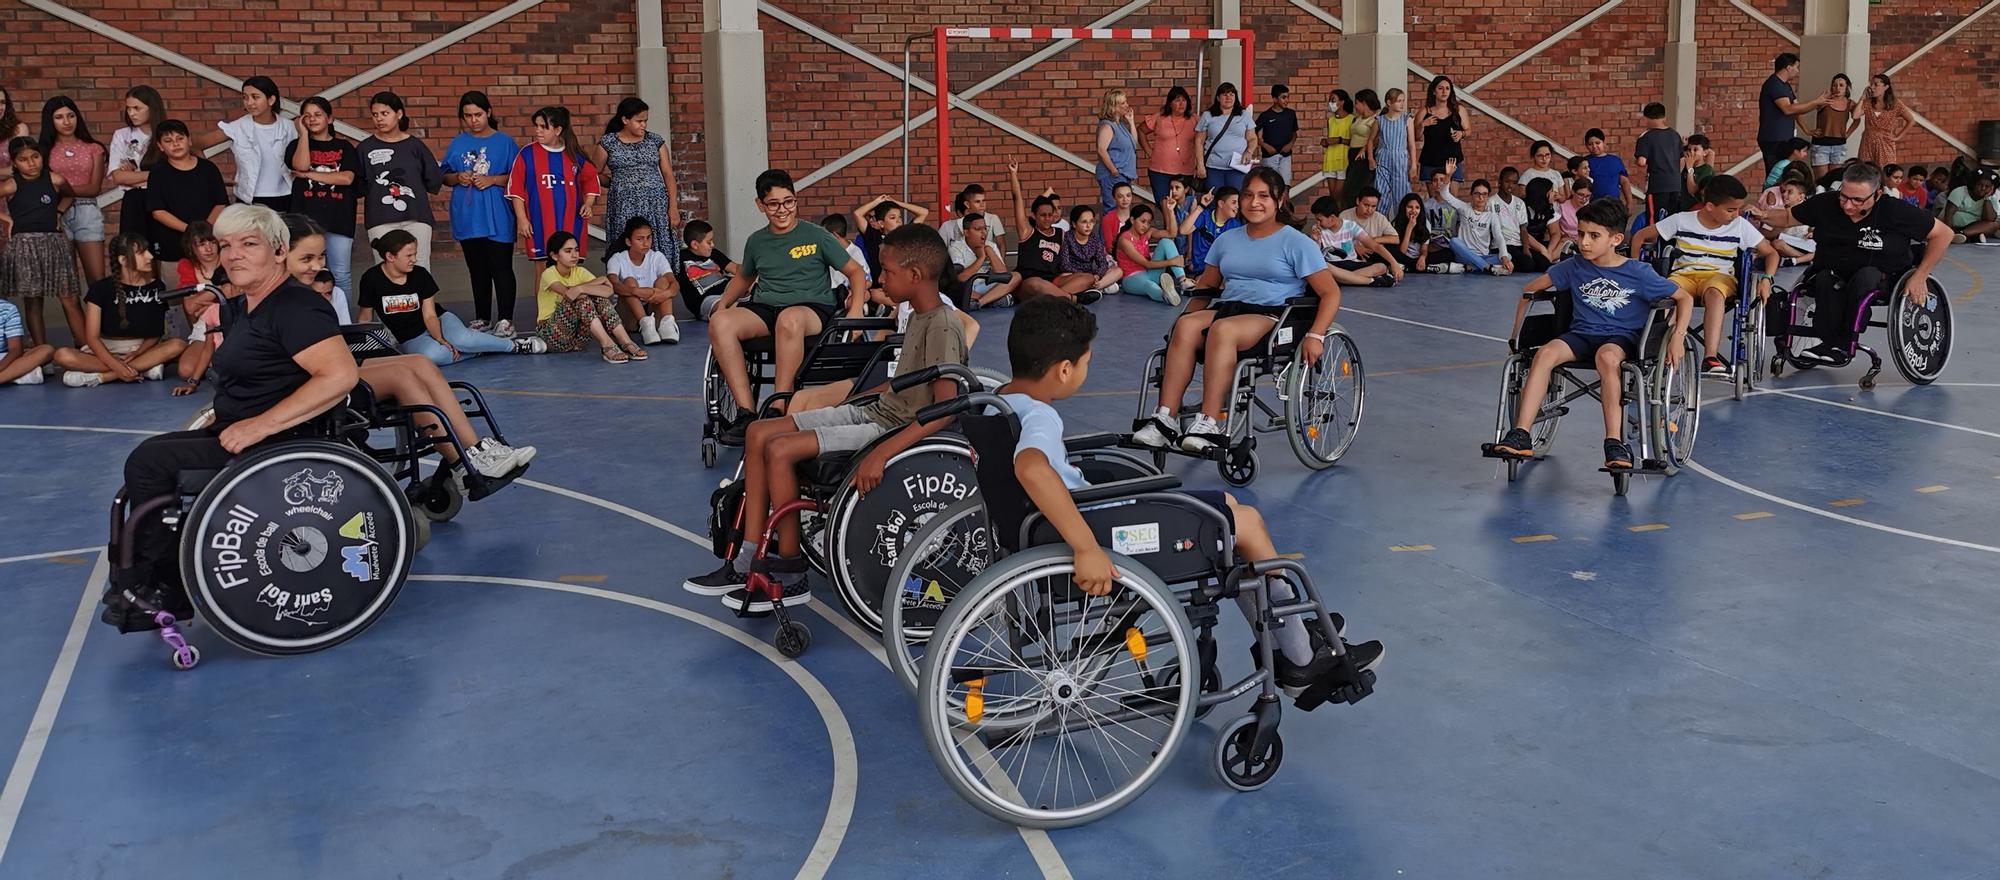 Ball amb cadira de rodes a l'escola Joaquim Cusí de Figueres